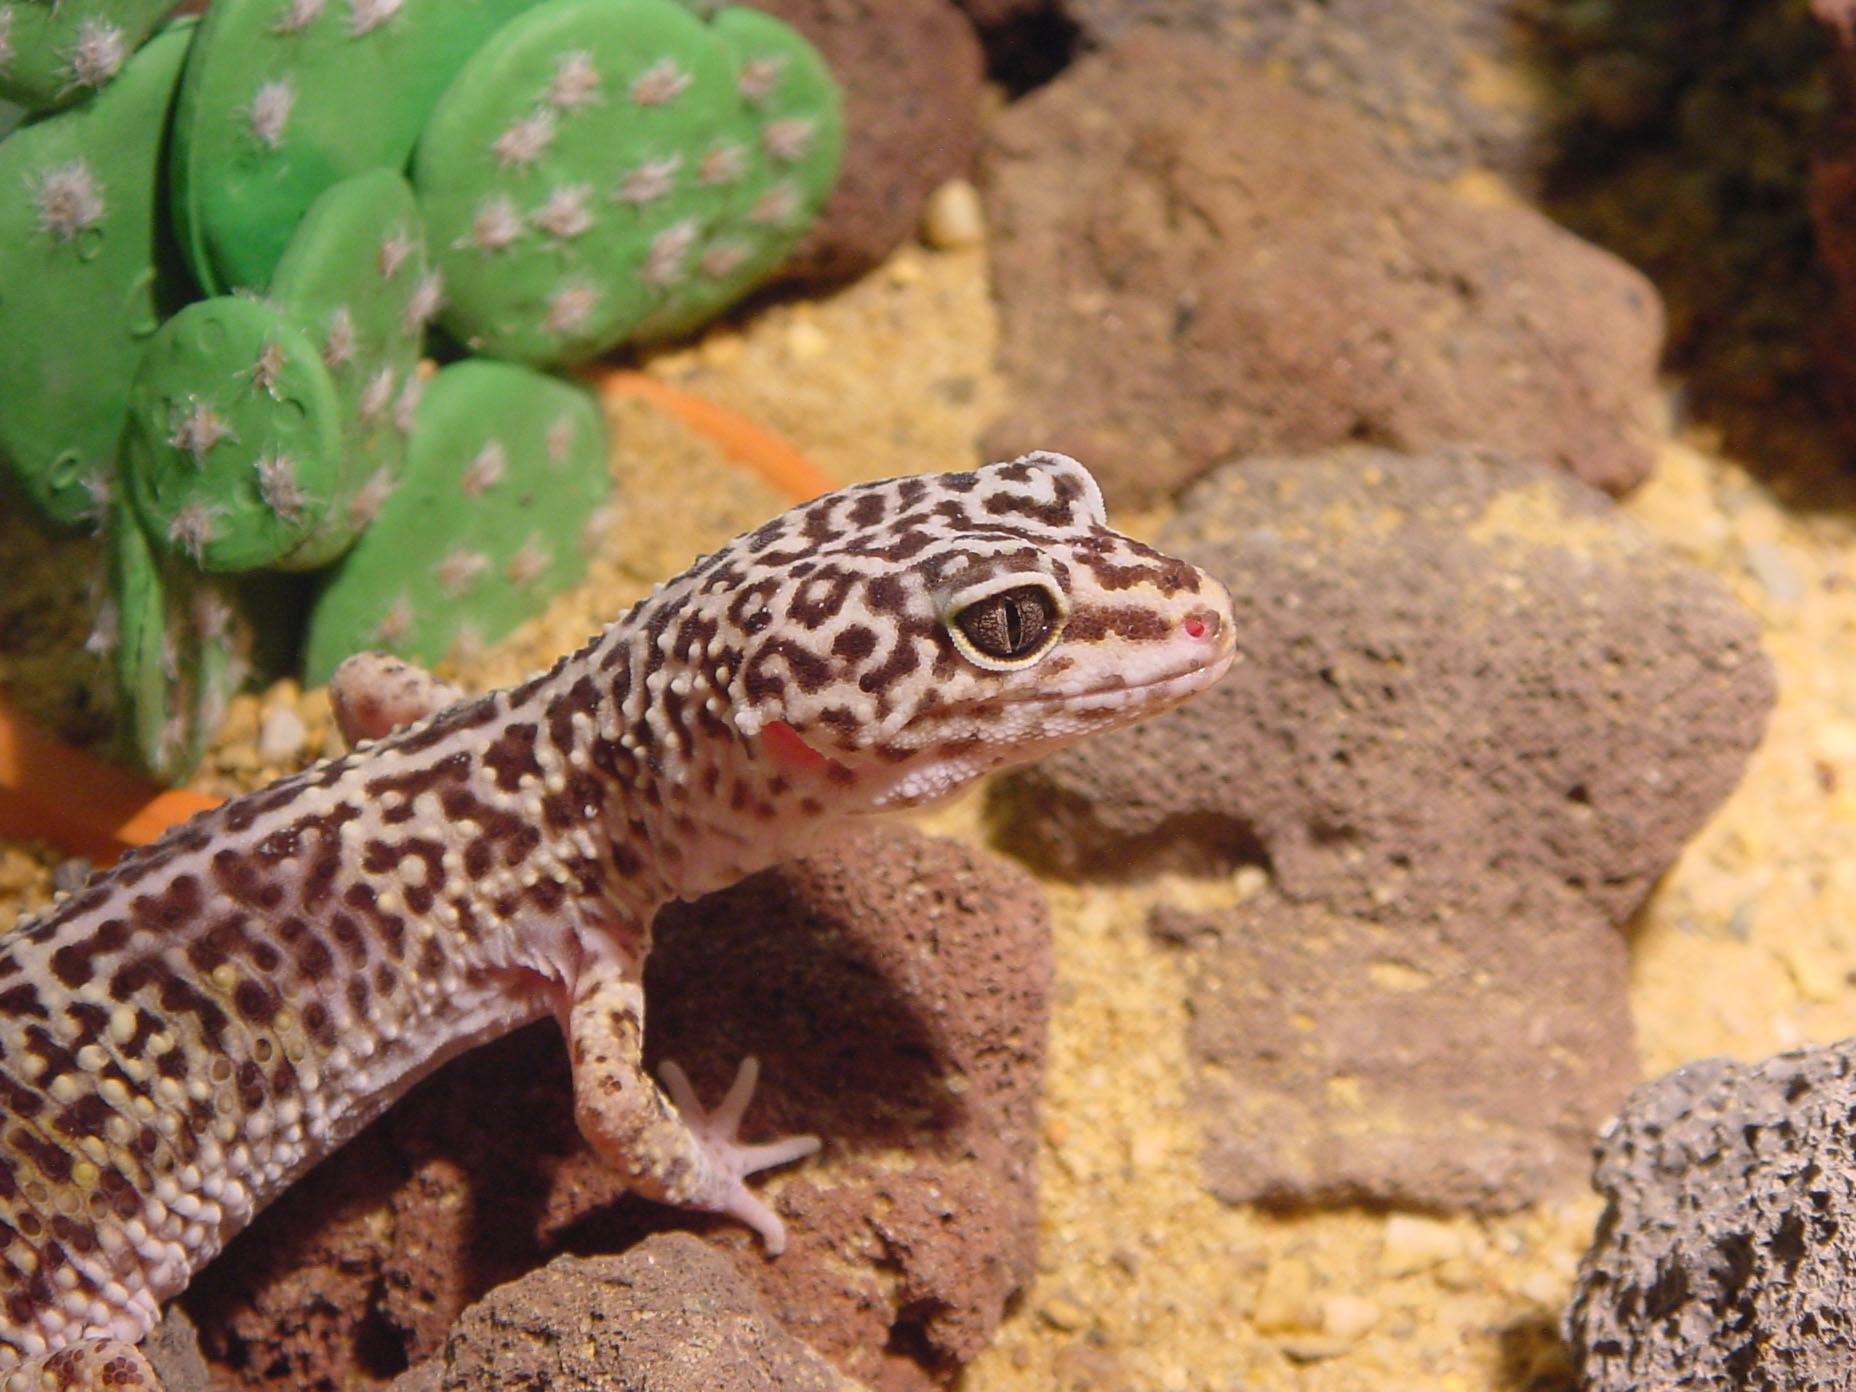 http://animals.timduru.org/dirlist/lizard/001001-luipaardgekko2%20-%20leopard%20gecko.jpg